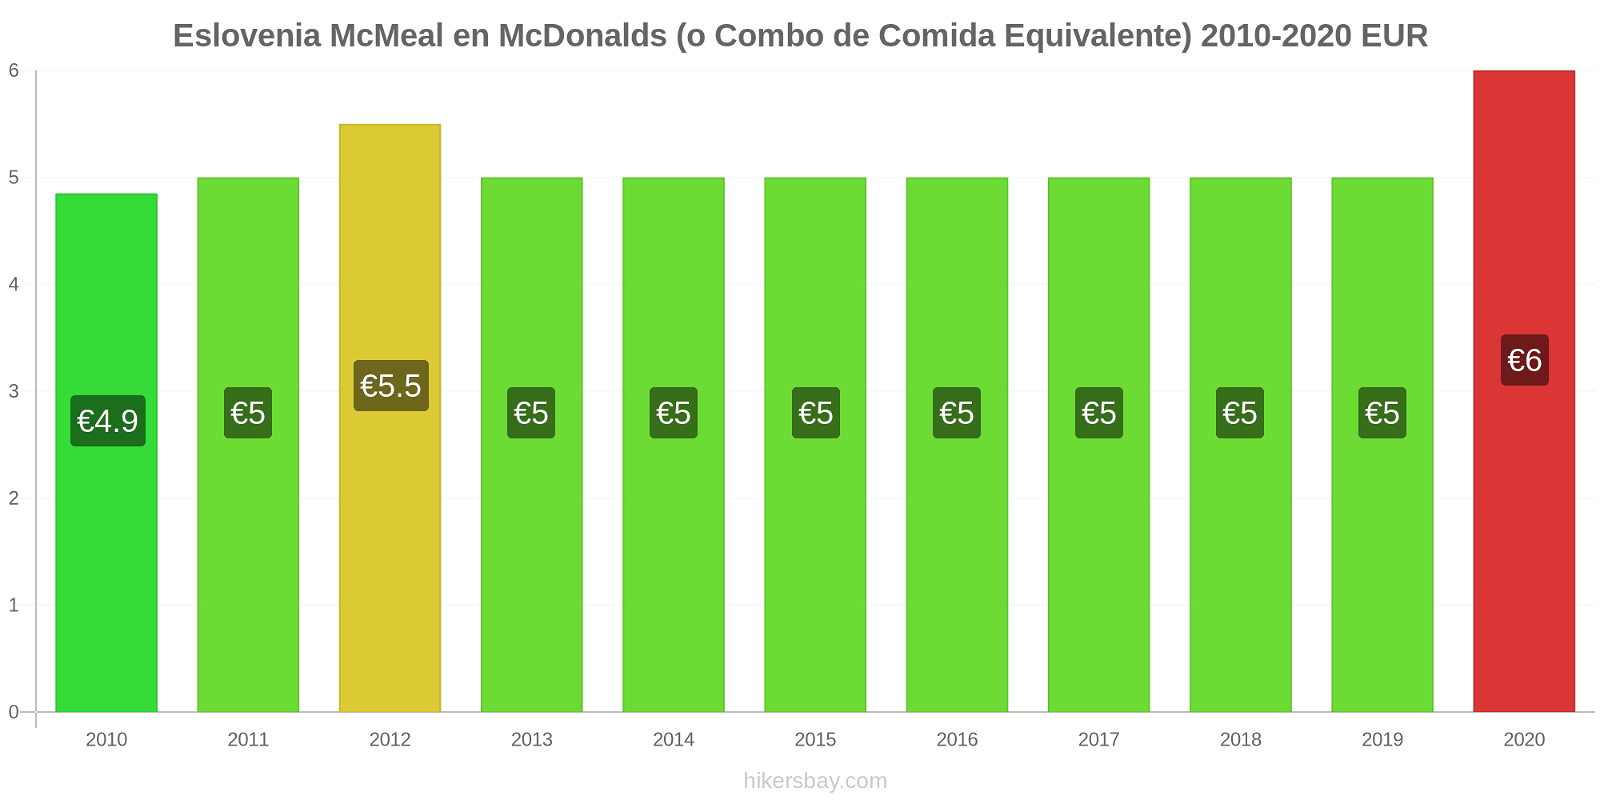 Eslovenia cambios de precios McMeal en McDonalds (o menú equivalente) hikersbay.com